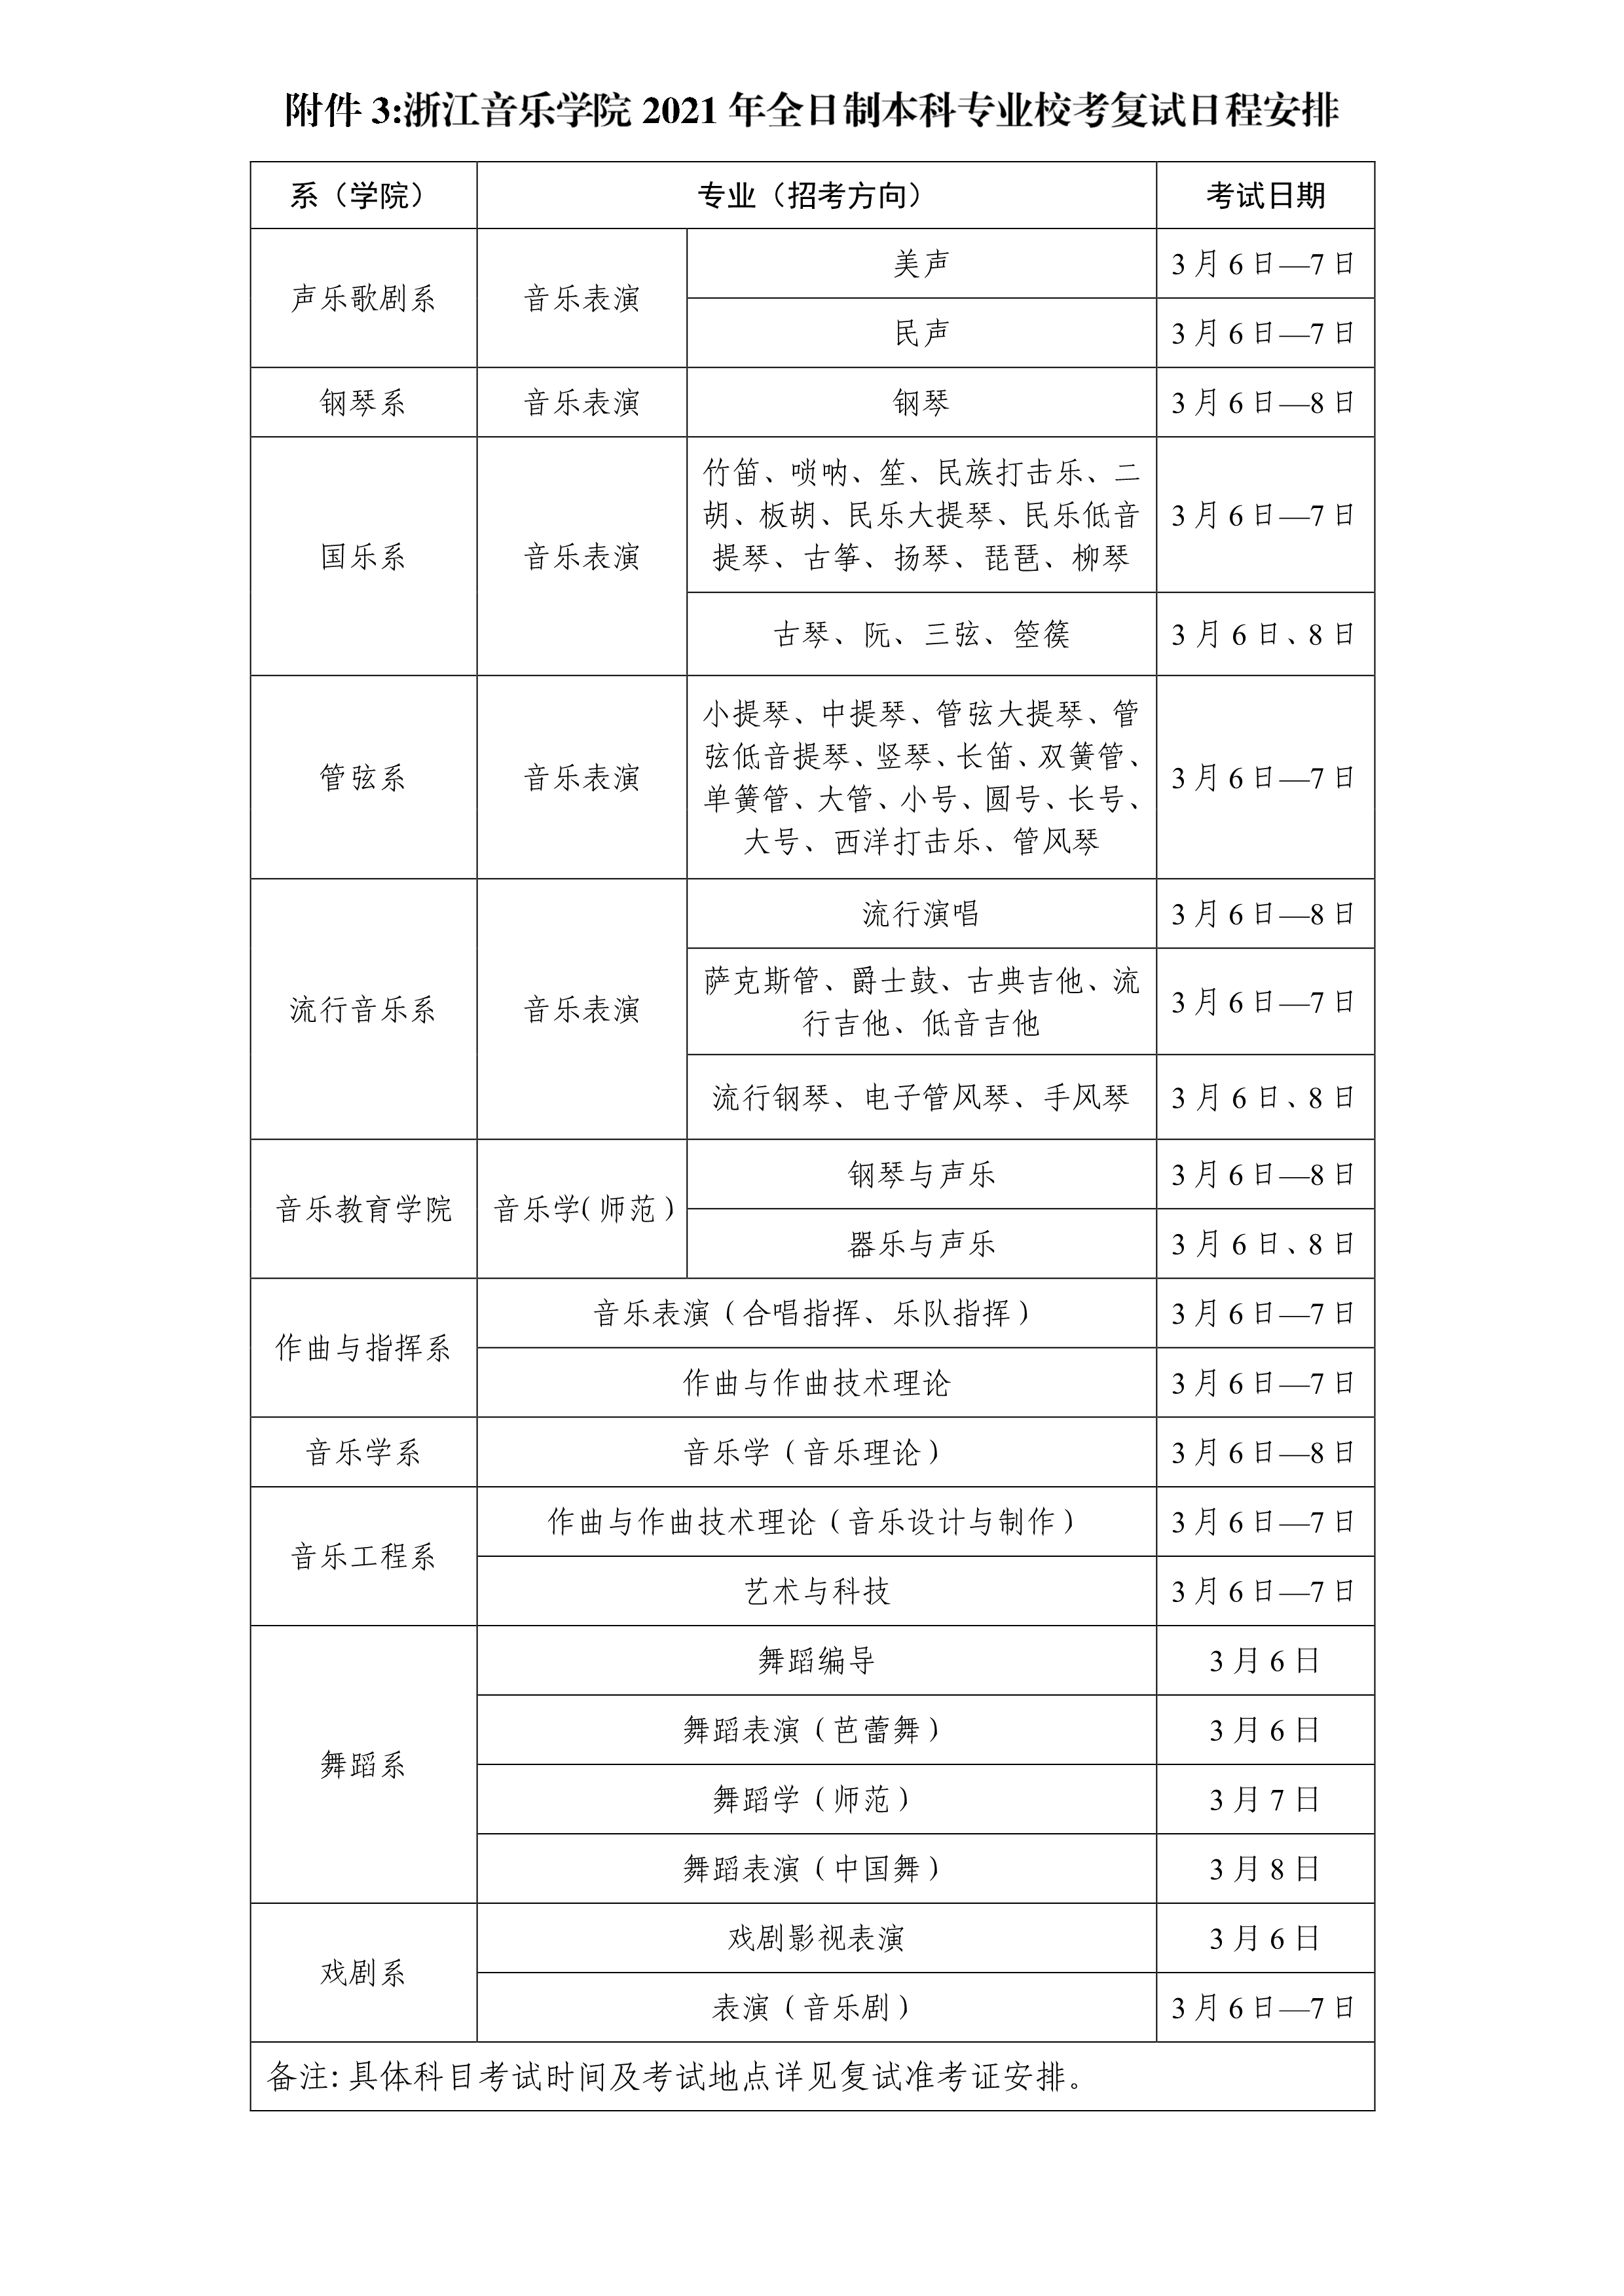 附件3：浙江音乐学院2021年全日制本科专业校考复试日程安排_1.png